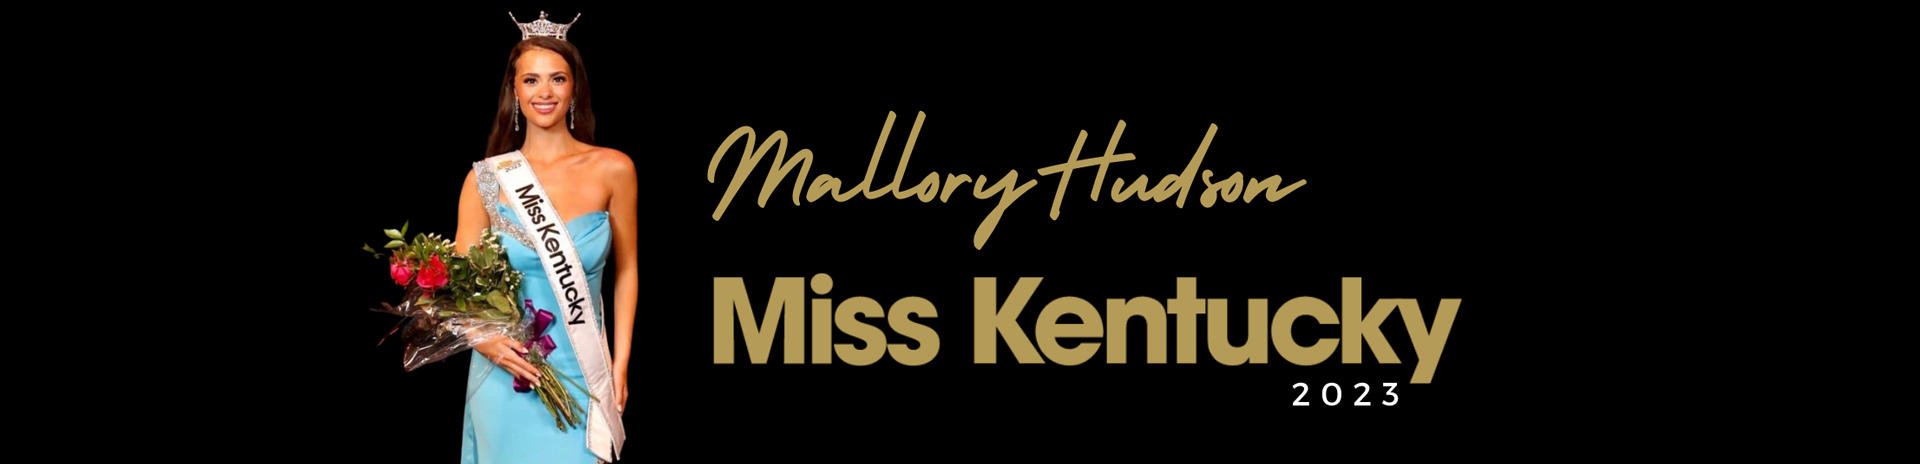 Miss Kentucky 2023 Mallory Hudson